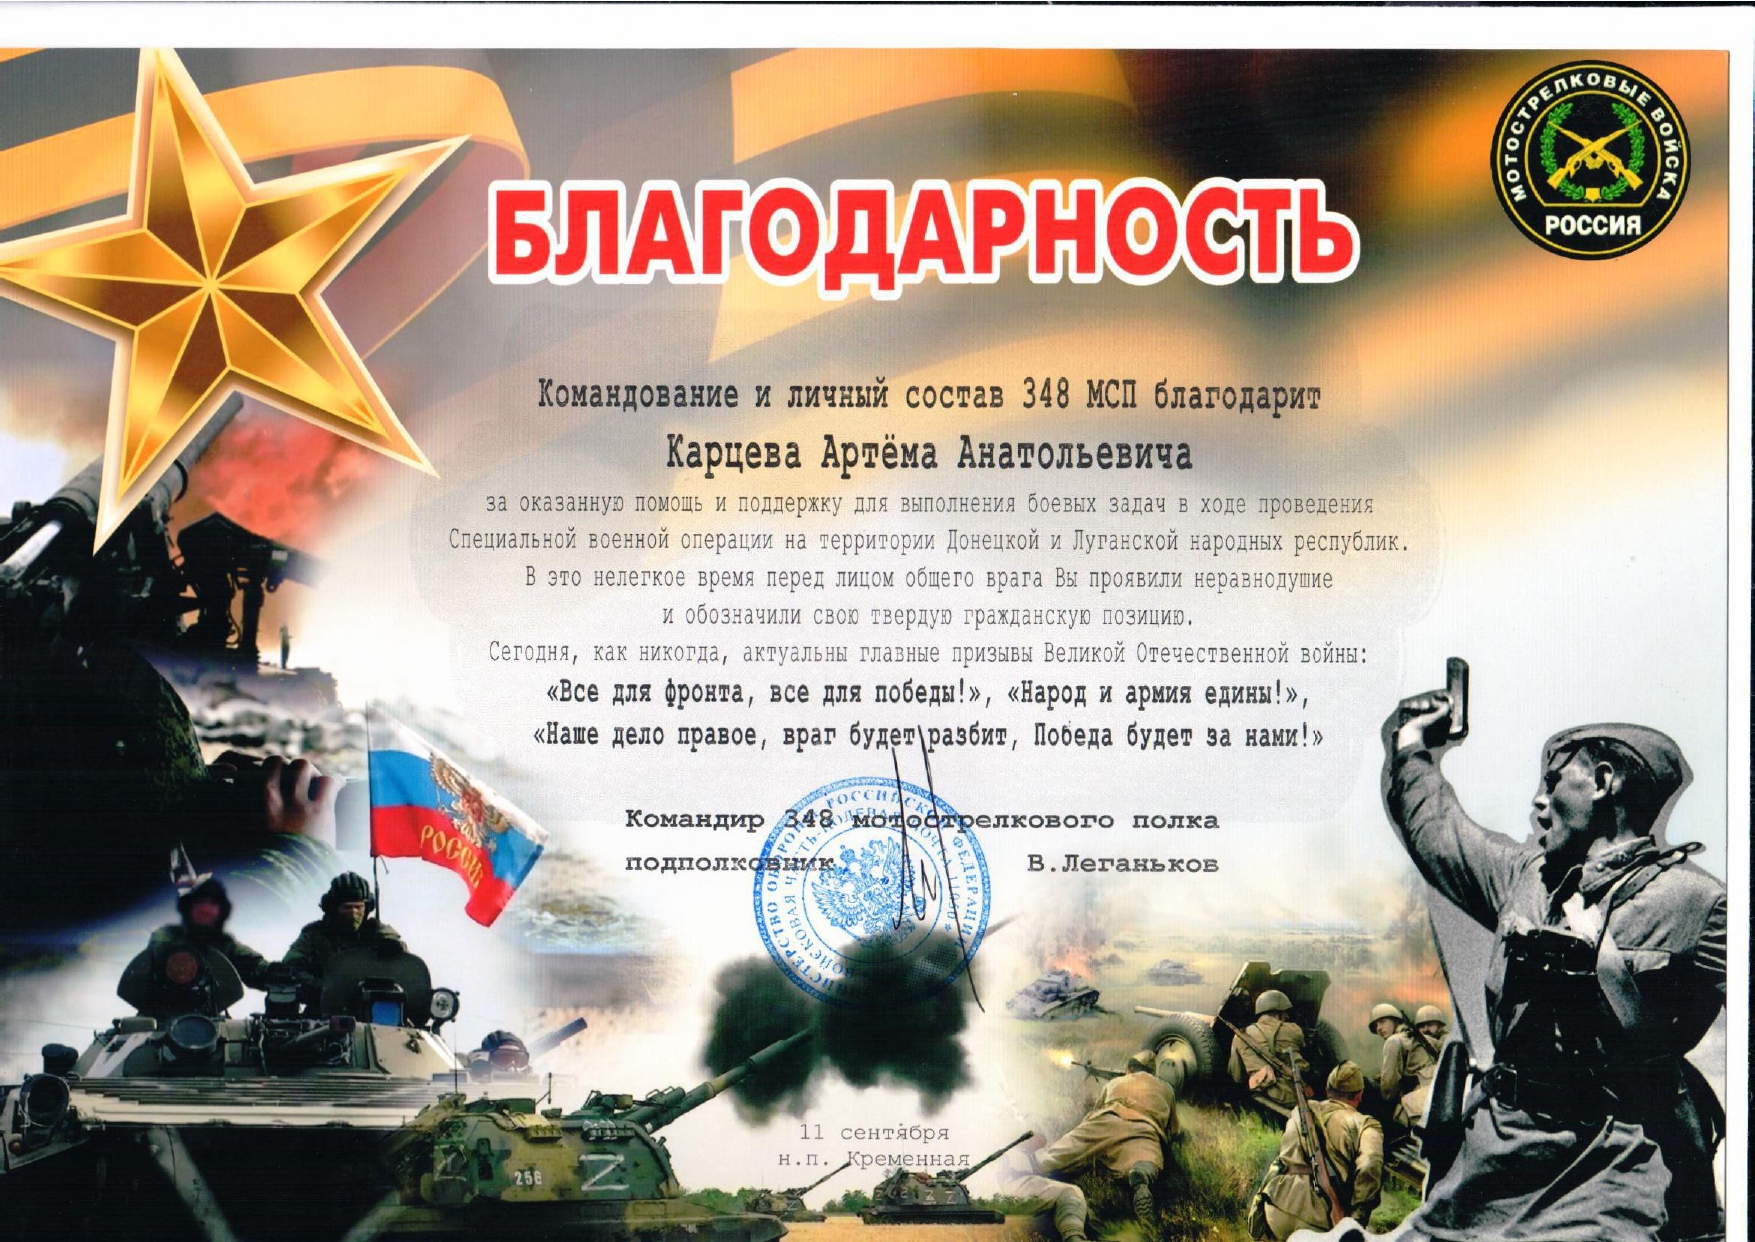 Благодарственное письмо от Мотострелковых войск ВС РФ